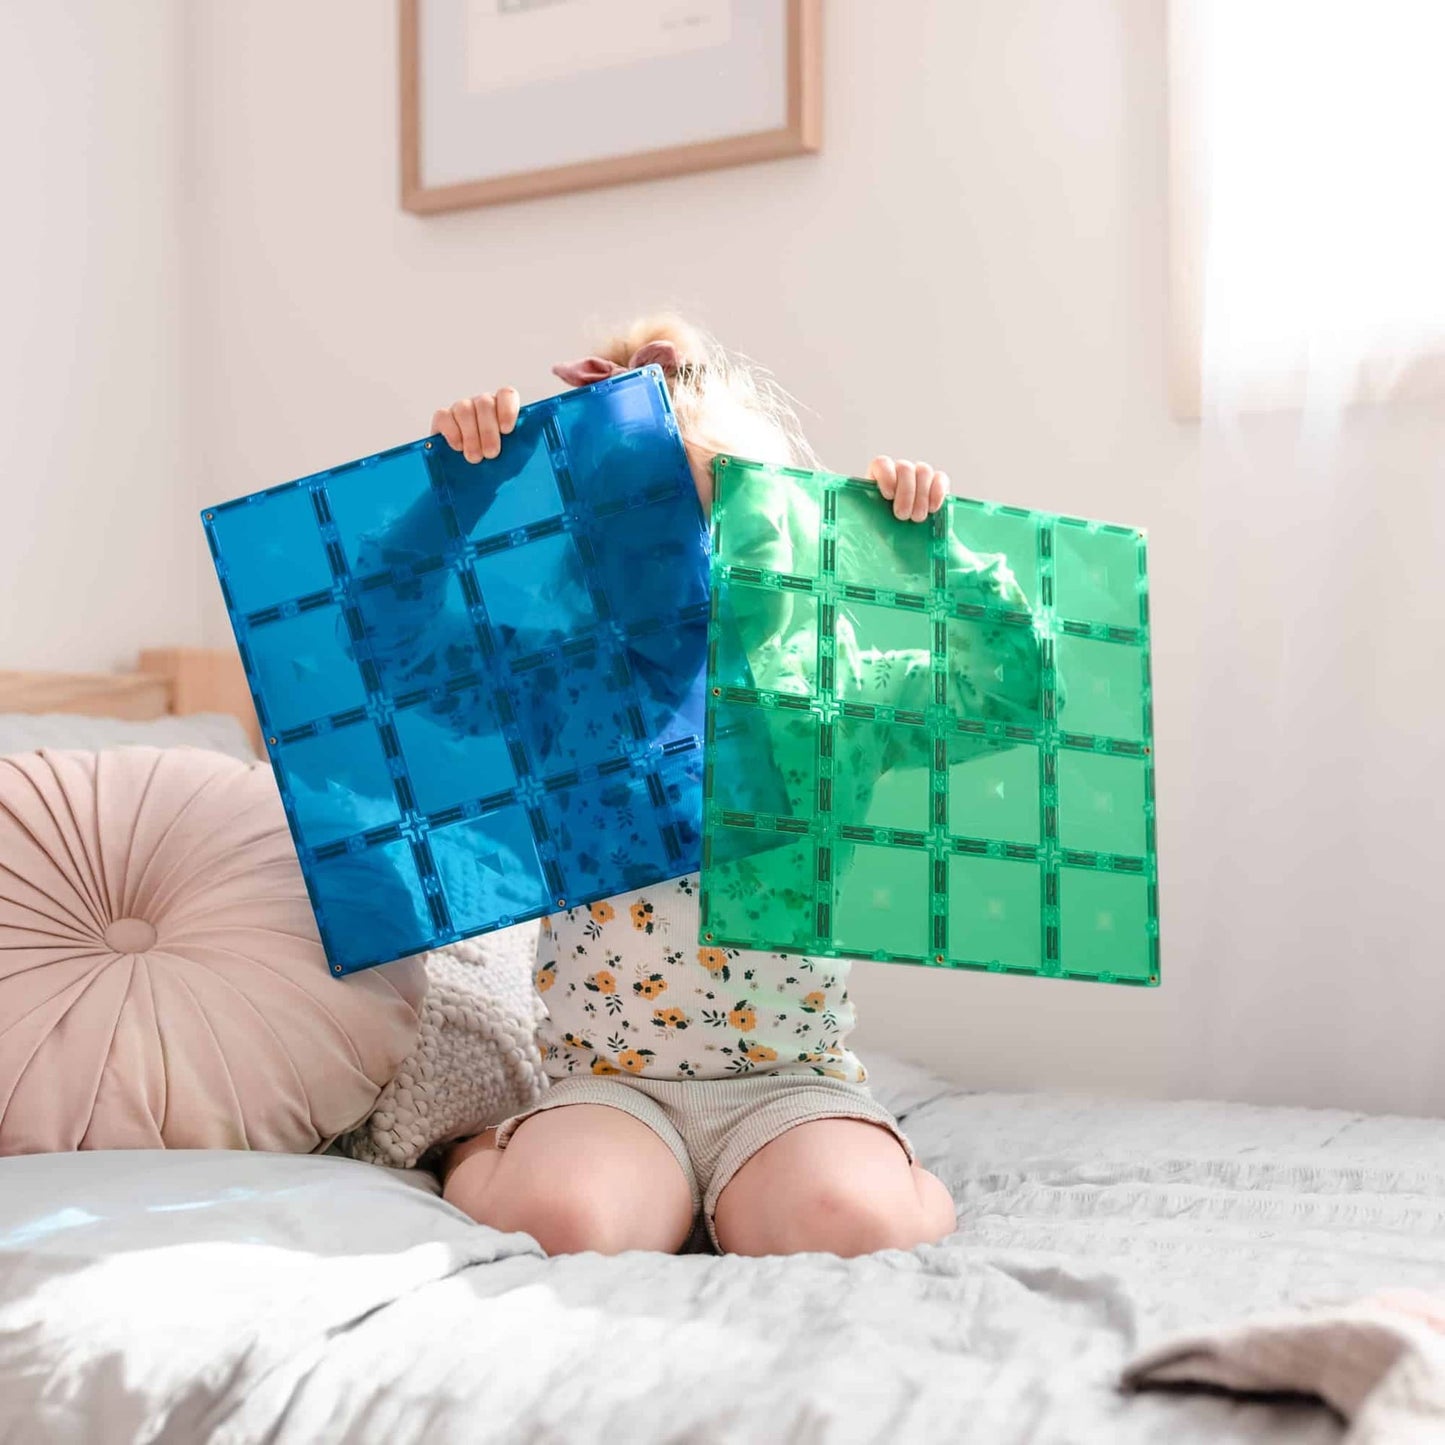 Connetix Tiles 2 Piece Base Plate Pack (Blue & Green)